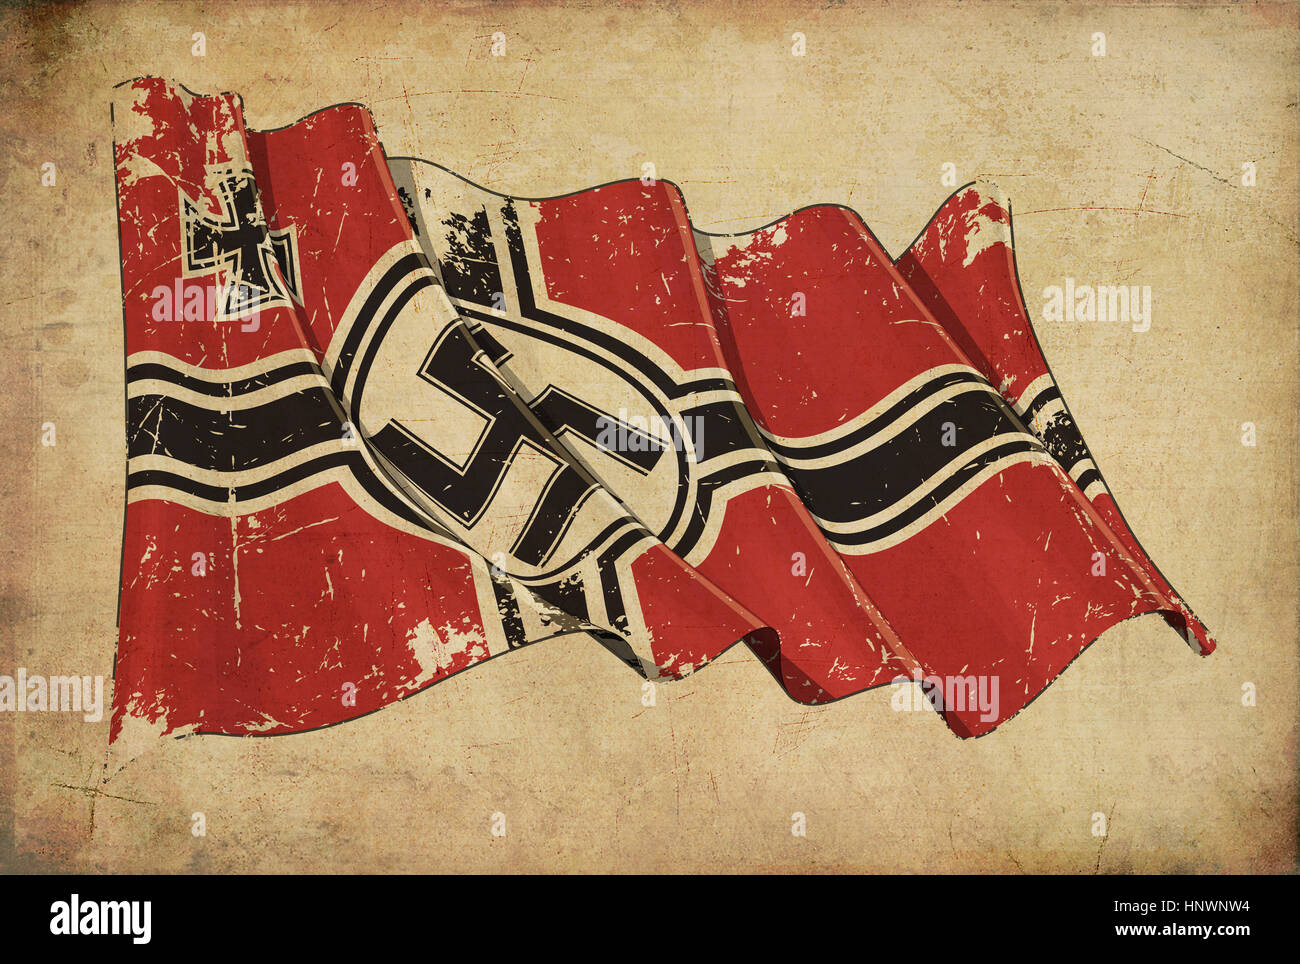 Redaktionelle Darstellung einer gealterten Papiers Tapete strukturierten Hintergrund mit einer zerkratzten Darstellung des deutschen Krieges Ensign 1938-1945. Stockfoto